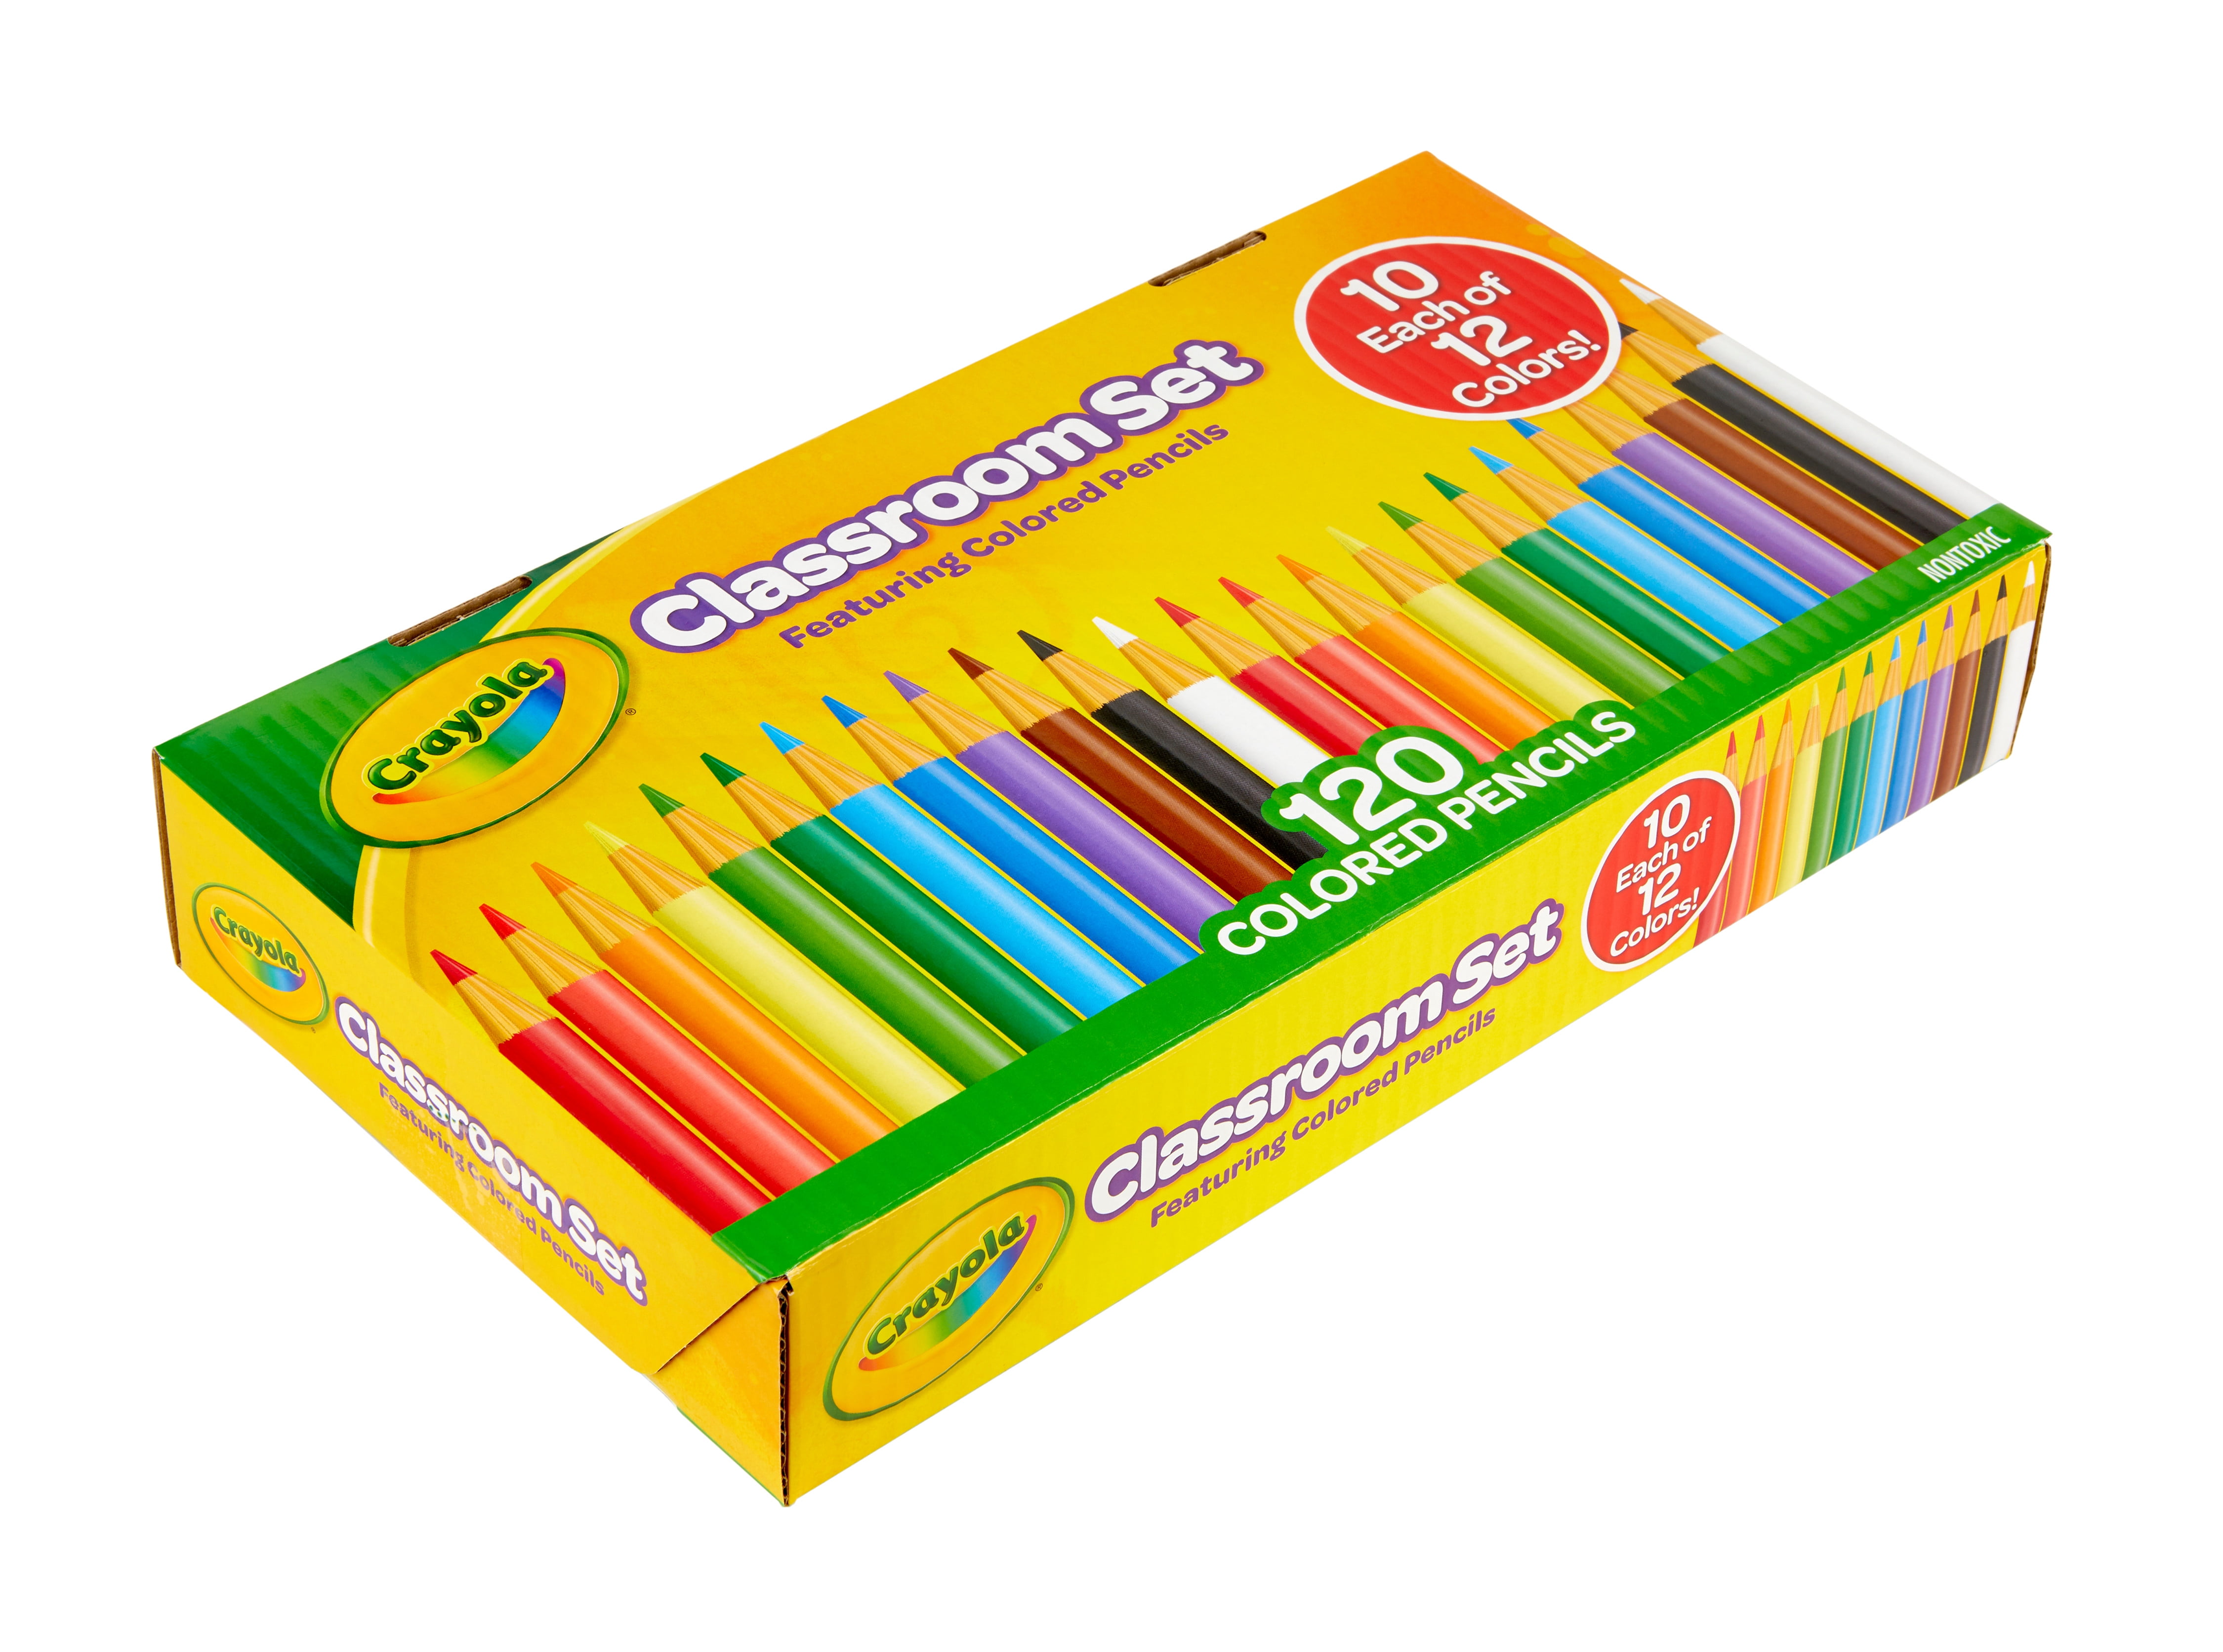 Colored Pencils, 120 Count, Coloring Supplies, Crayola.com